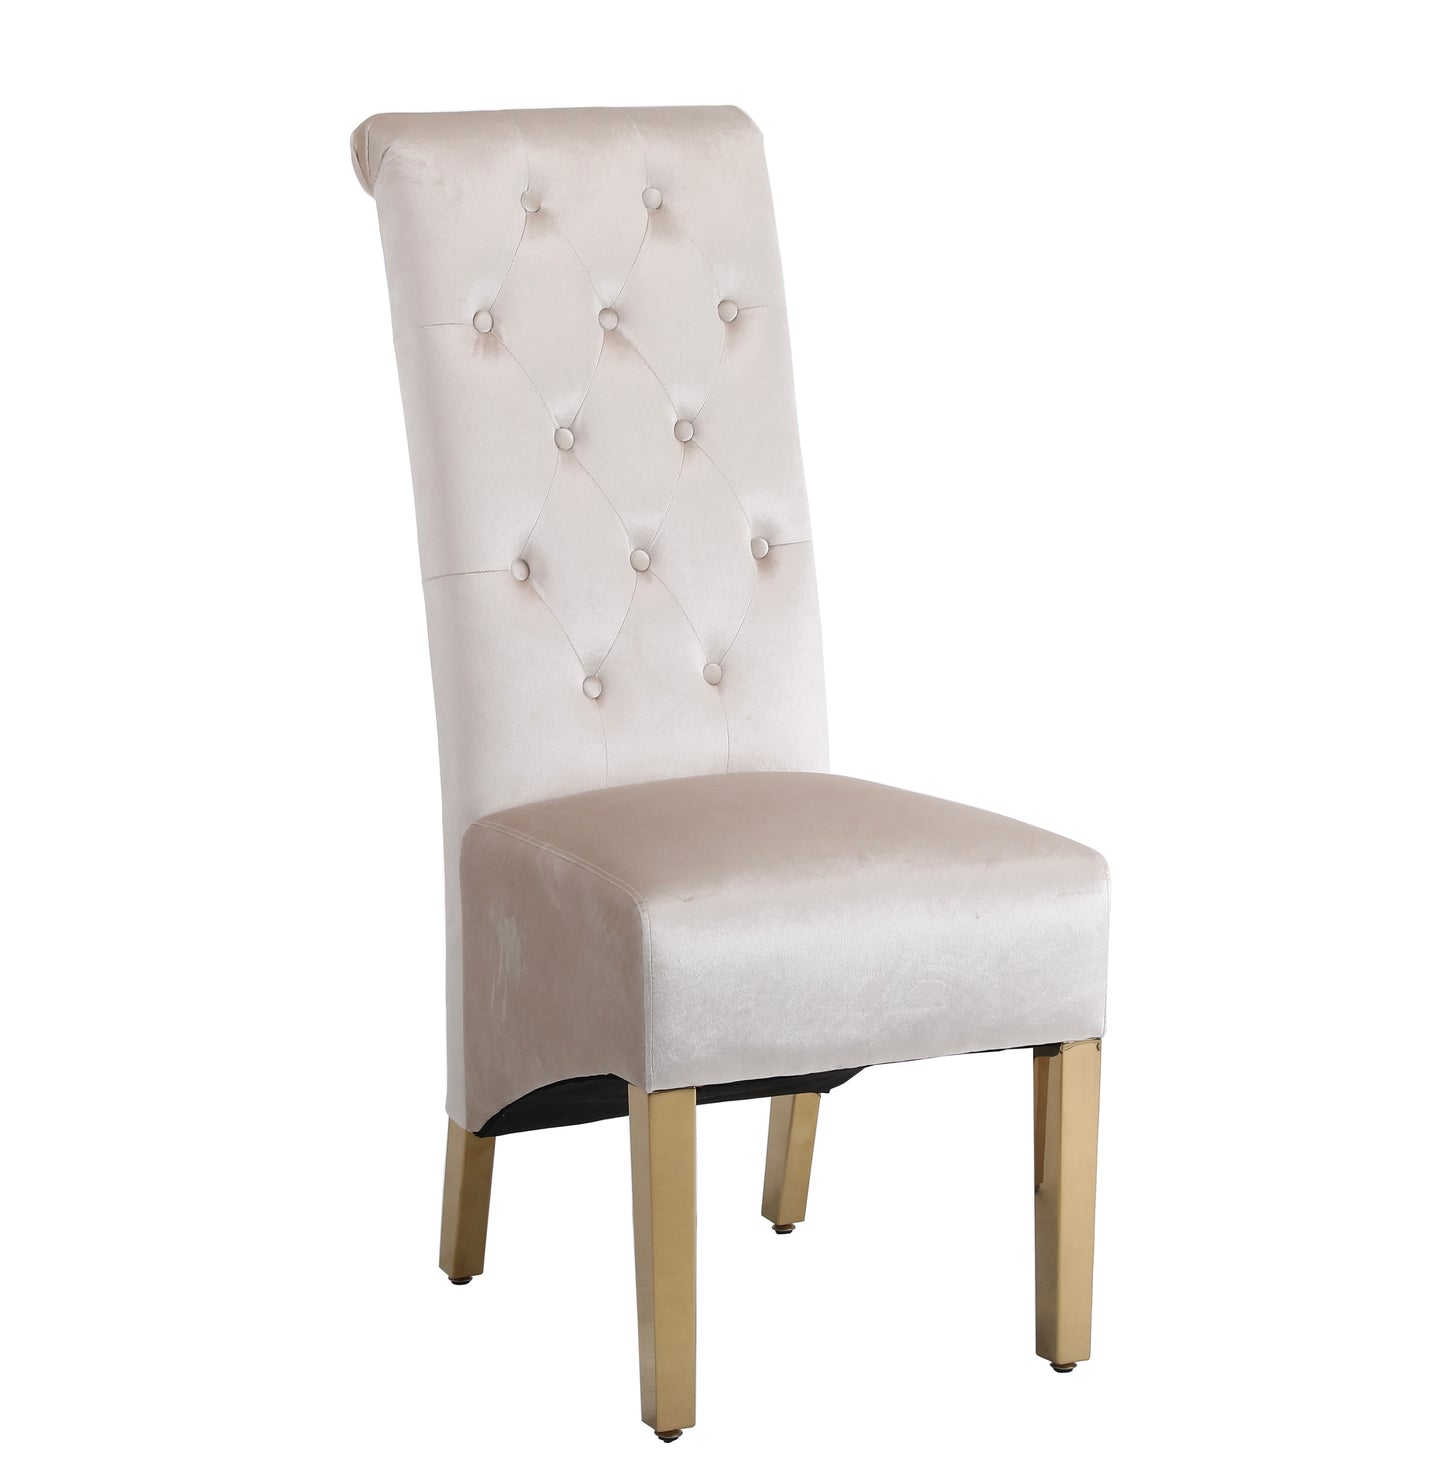 X2 Velvet High Back Dining Chairs with Golden Chrome Knocker & Legs